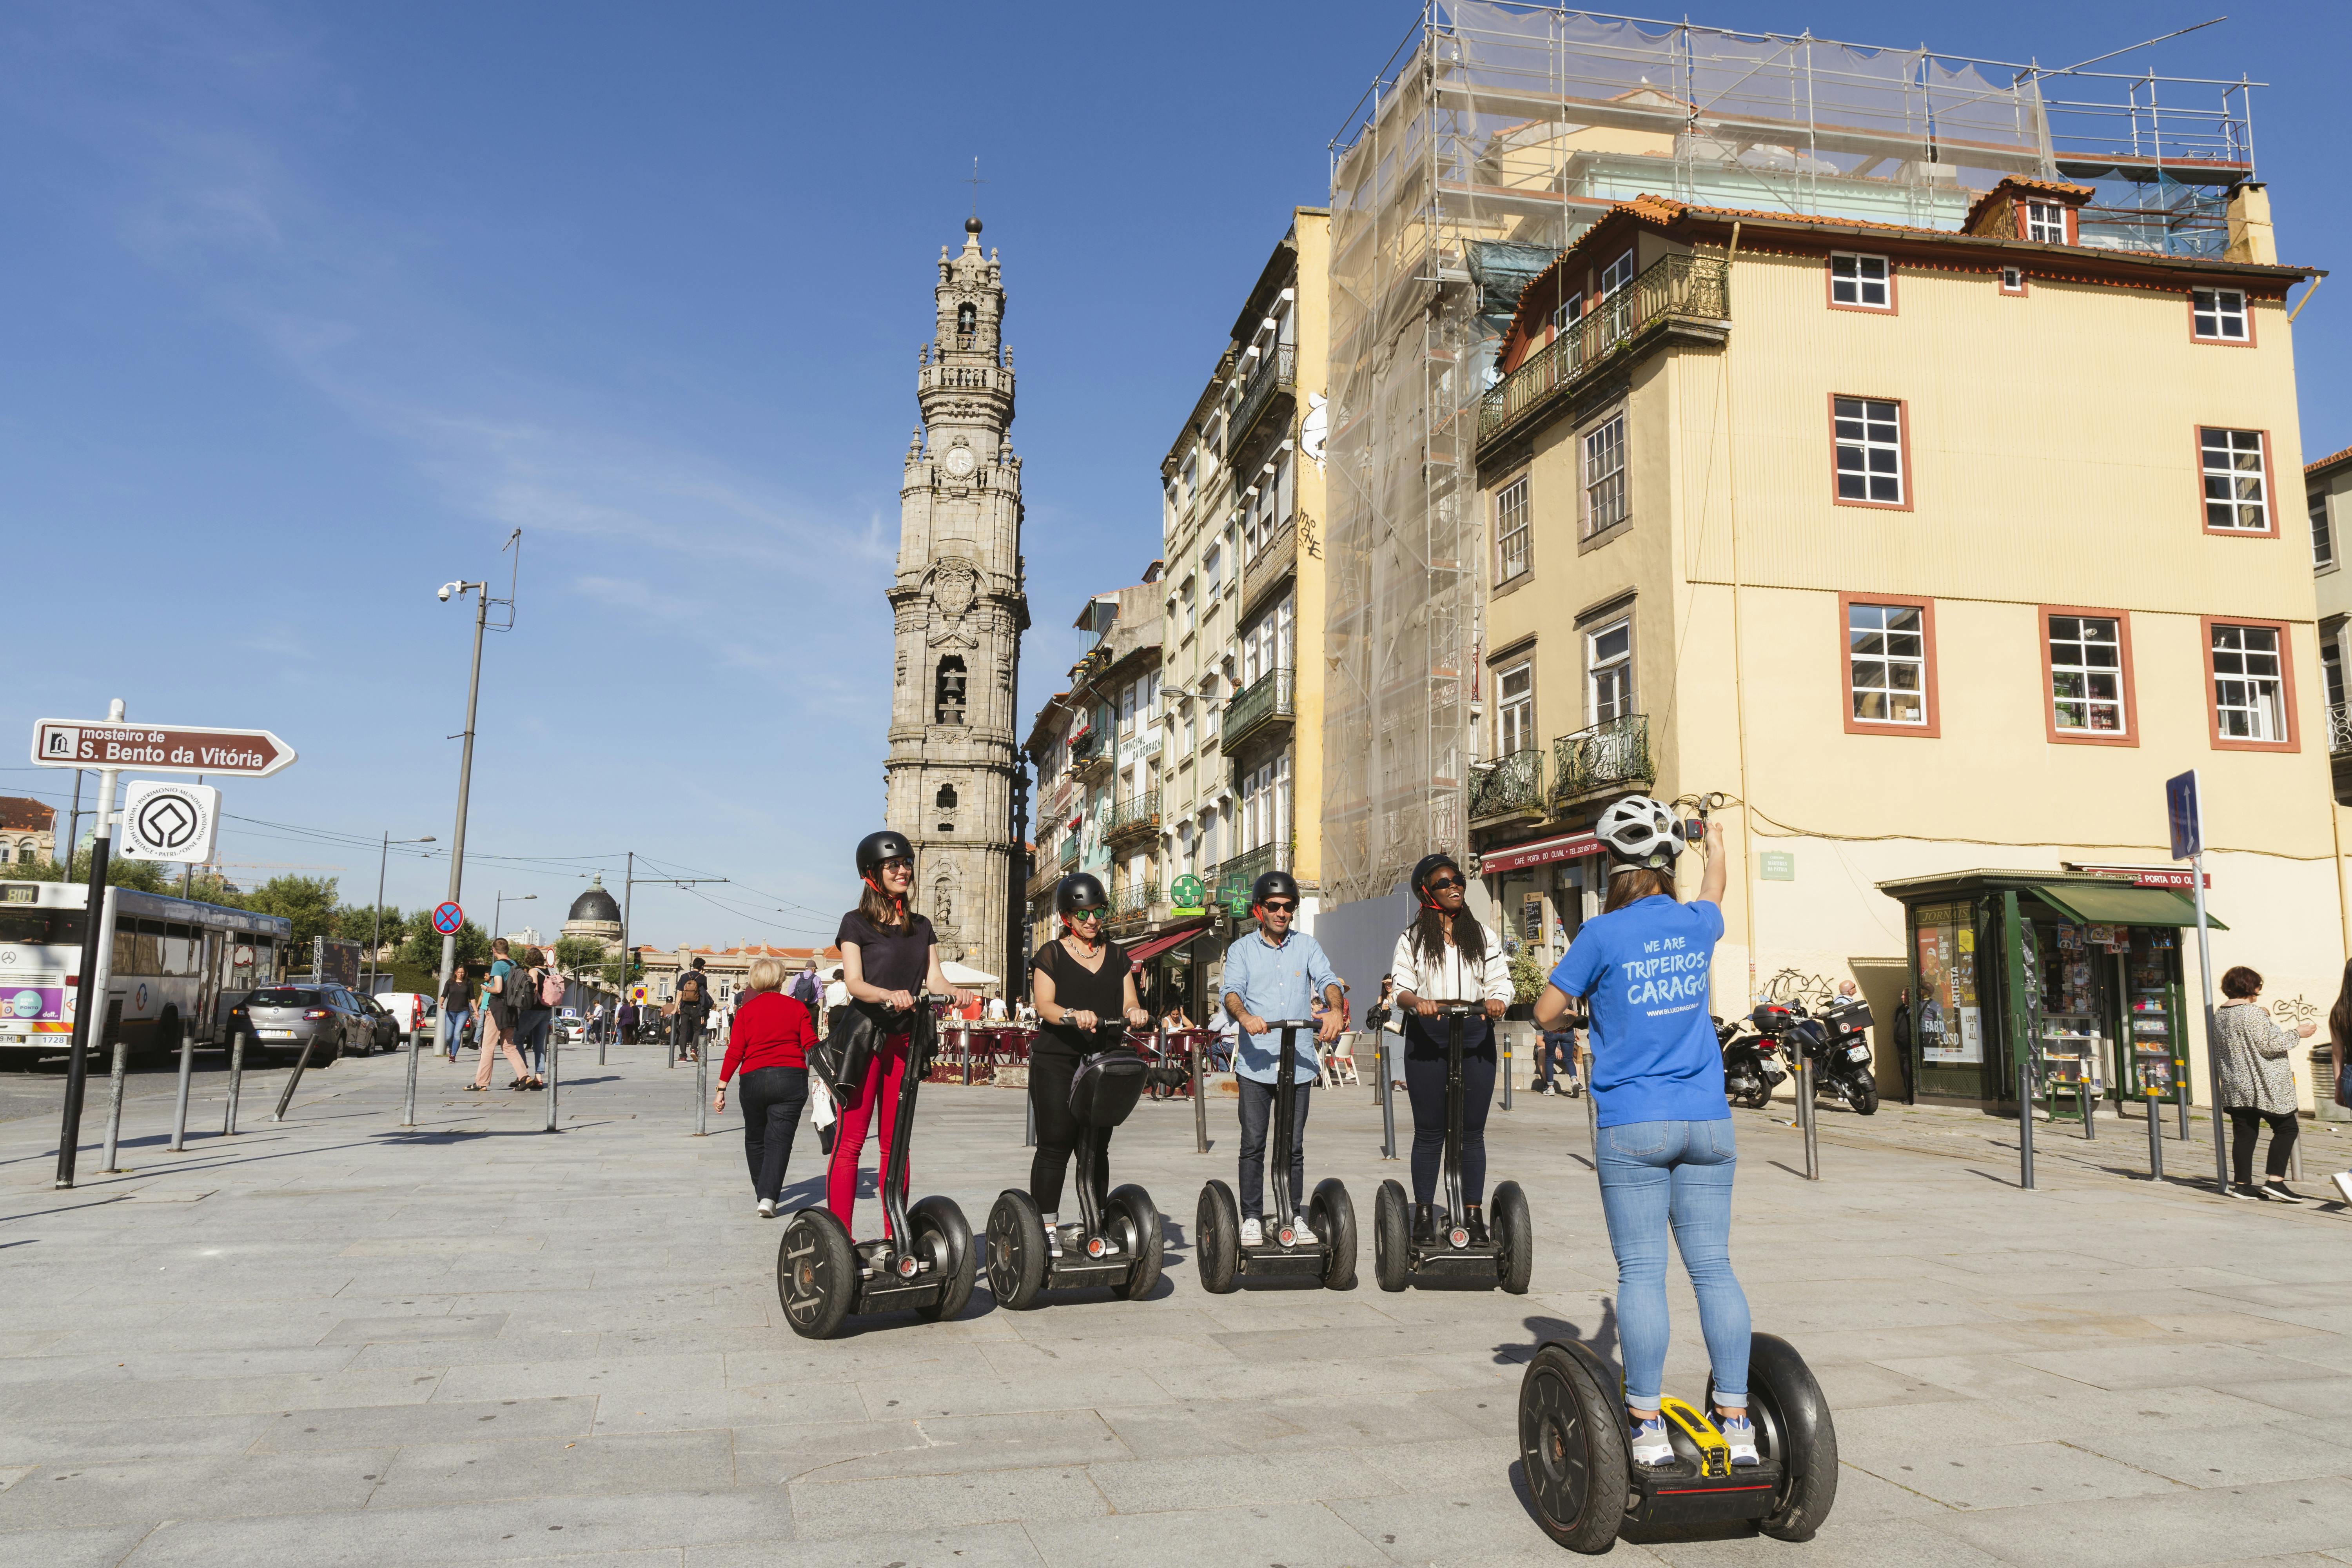 Porto podkreśla wycieczkę segwayem